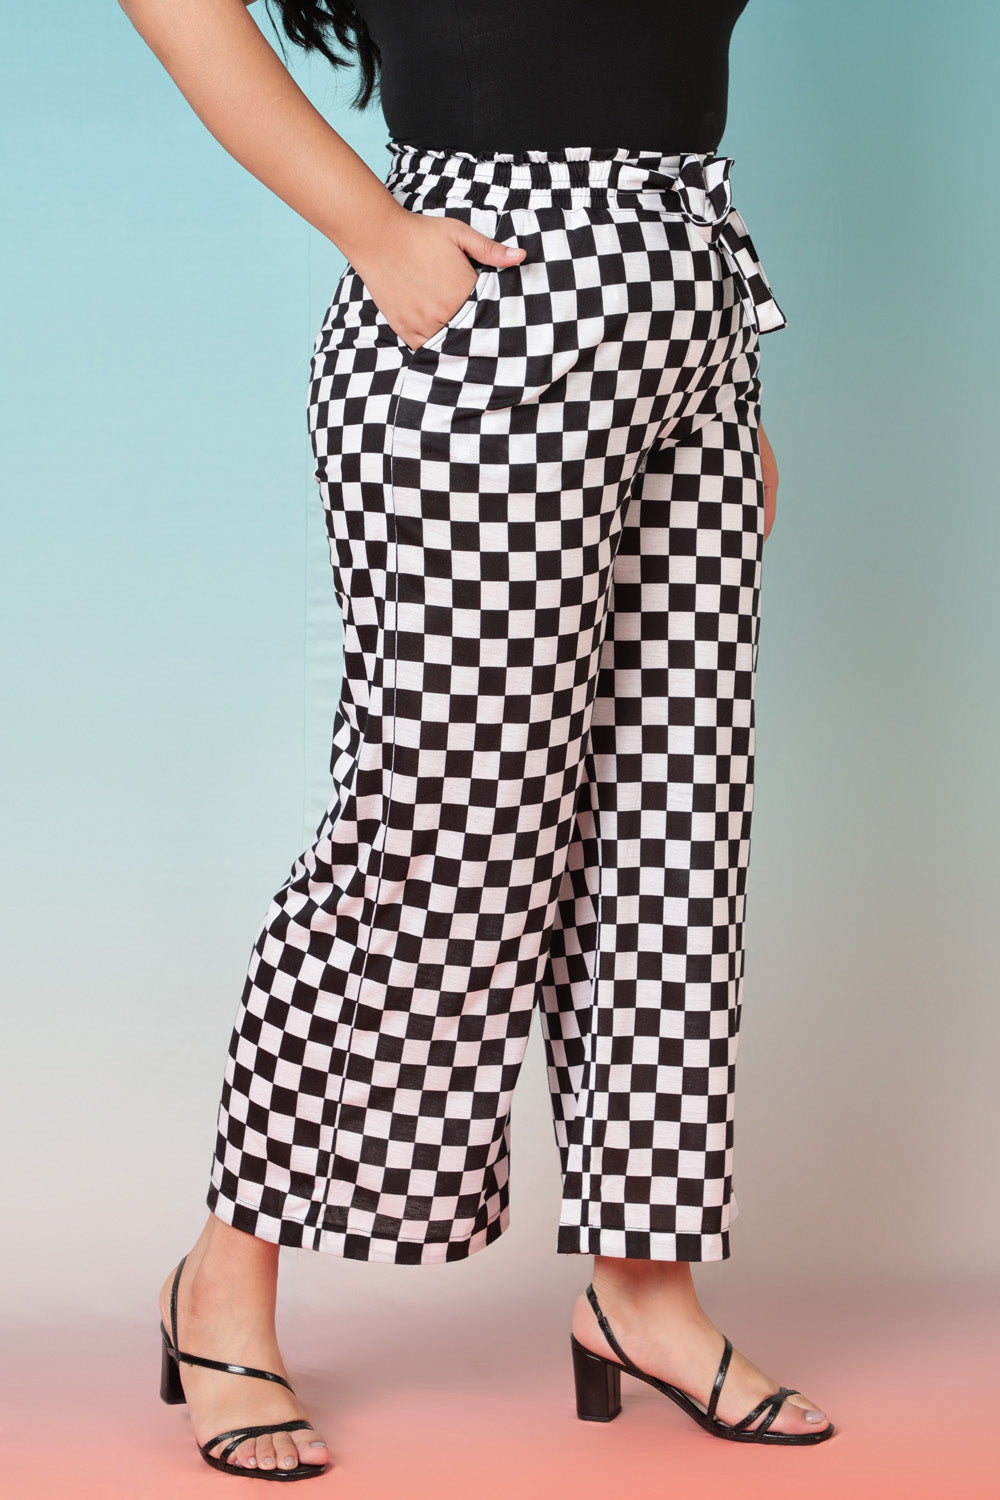 Racer Checkered High Waist Pants for Women